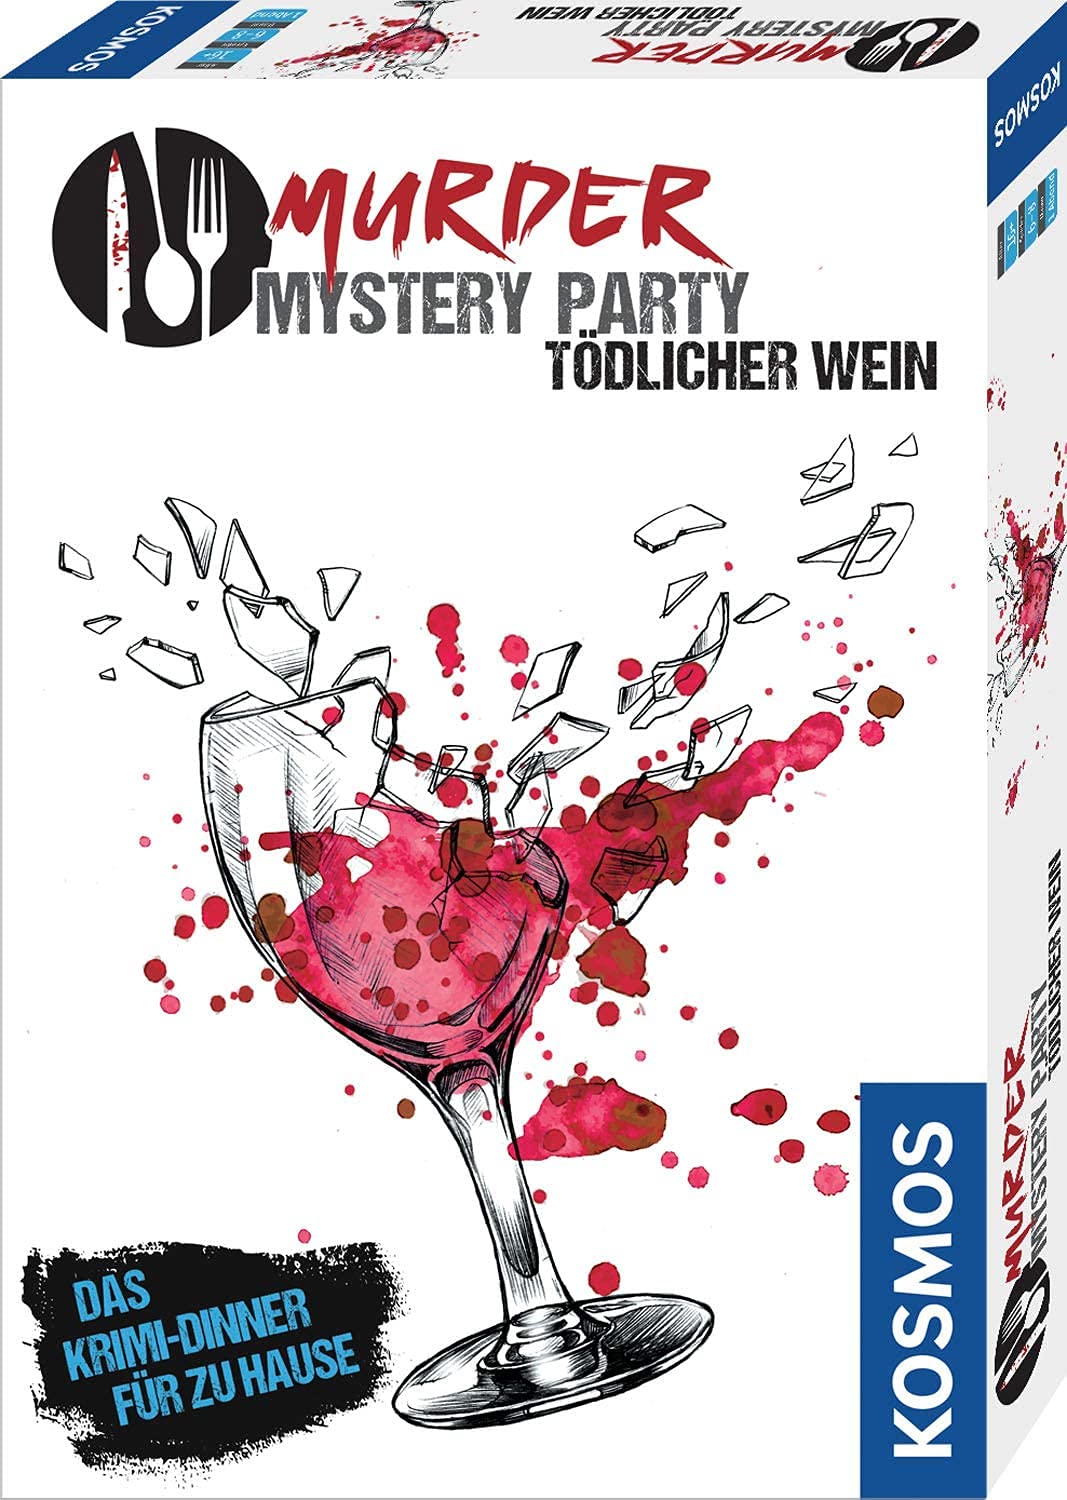 KOSMOS ‎695125 Murder Mystery Party - Tödlicher Wein, Das Krimi-Dinner für zu Hause, Komplett-Set für genau 6-8 Personen ab 16 Jahren, Partyspiel